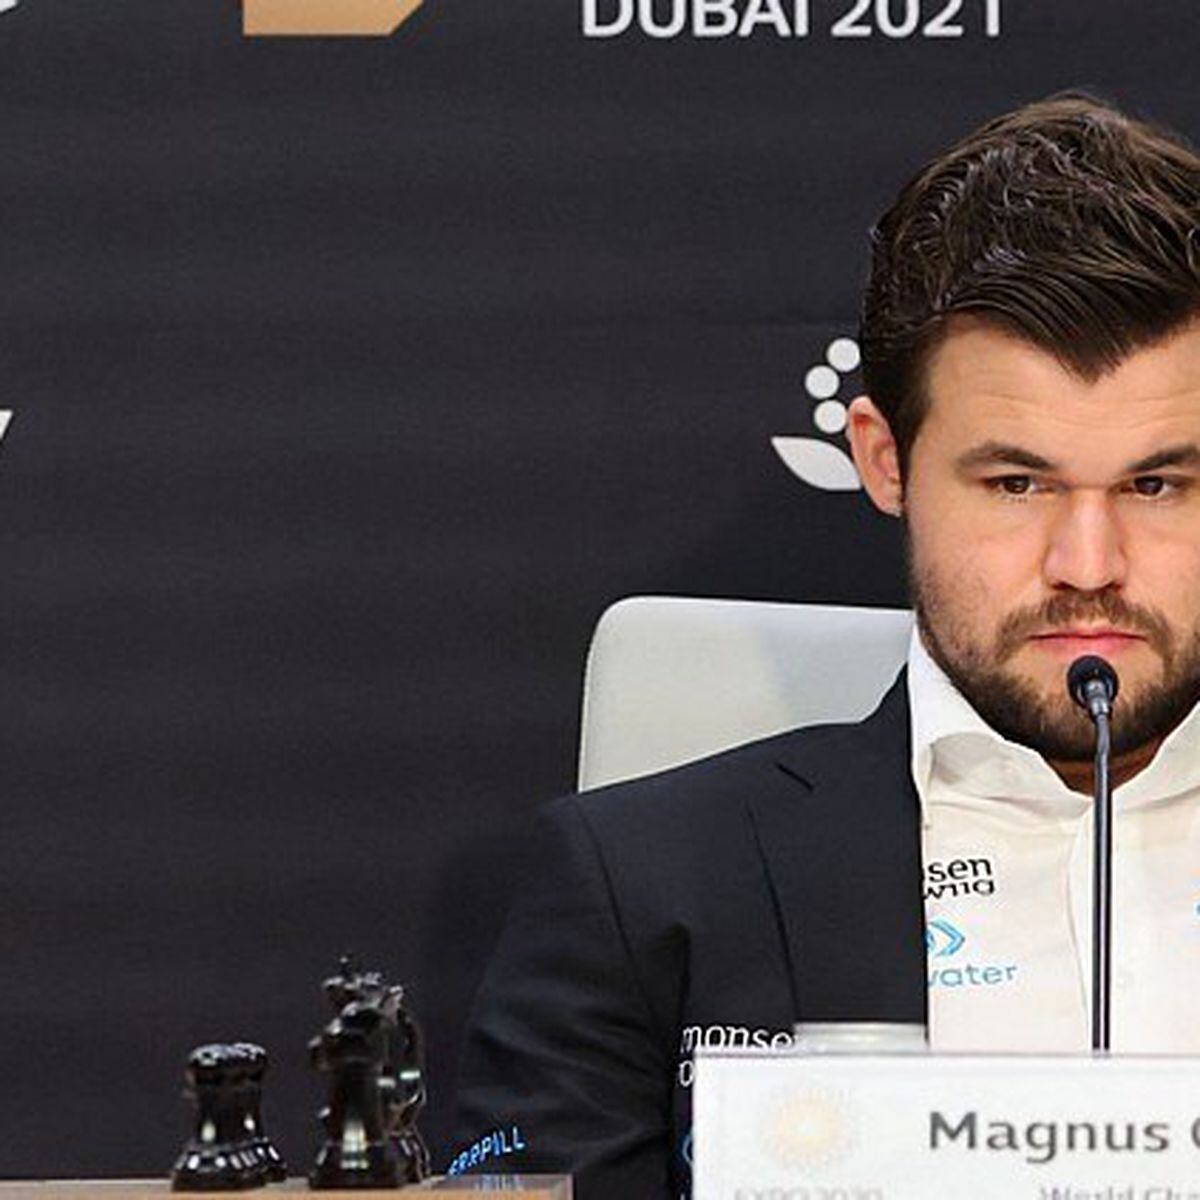 Magnus Carlsen S/A: ser campeão mundial de xadrez é um grande